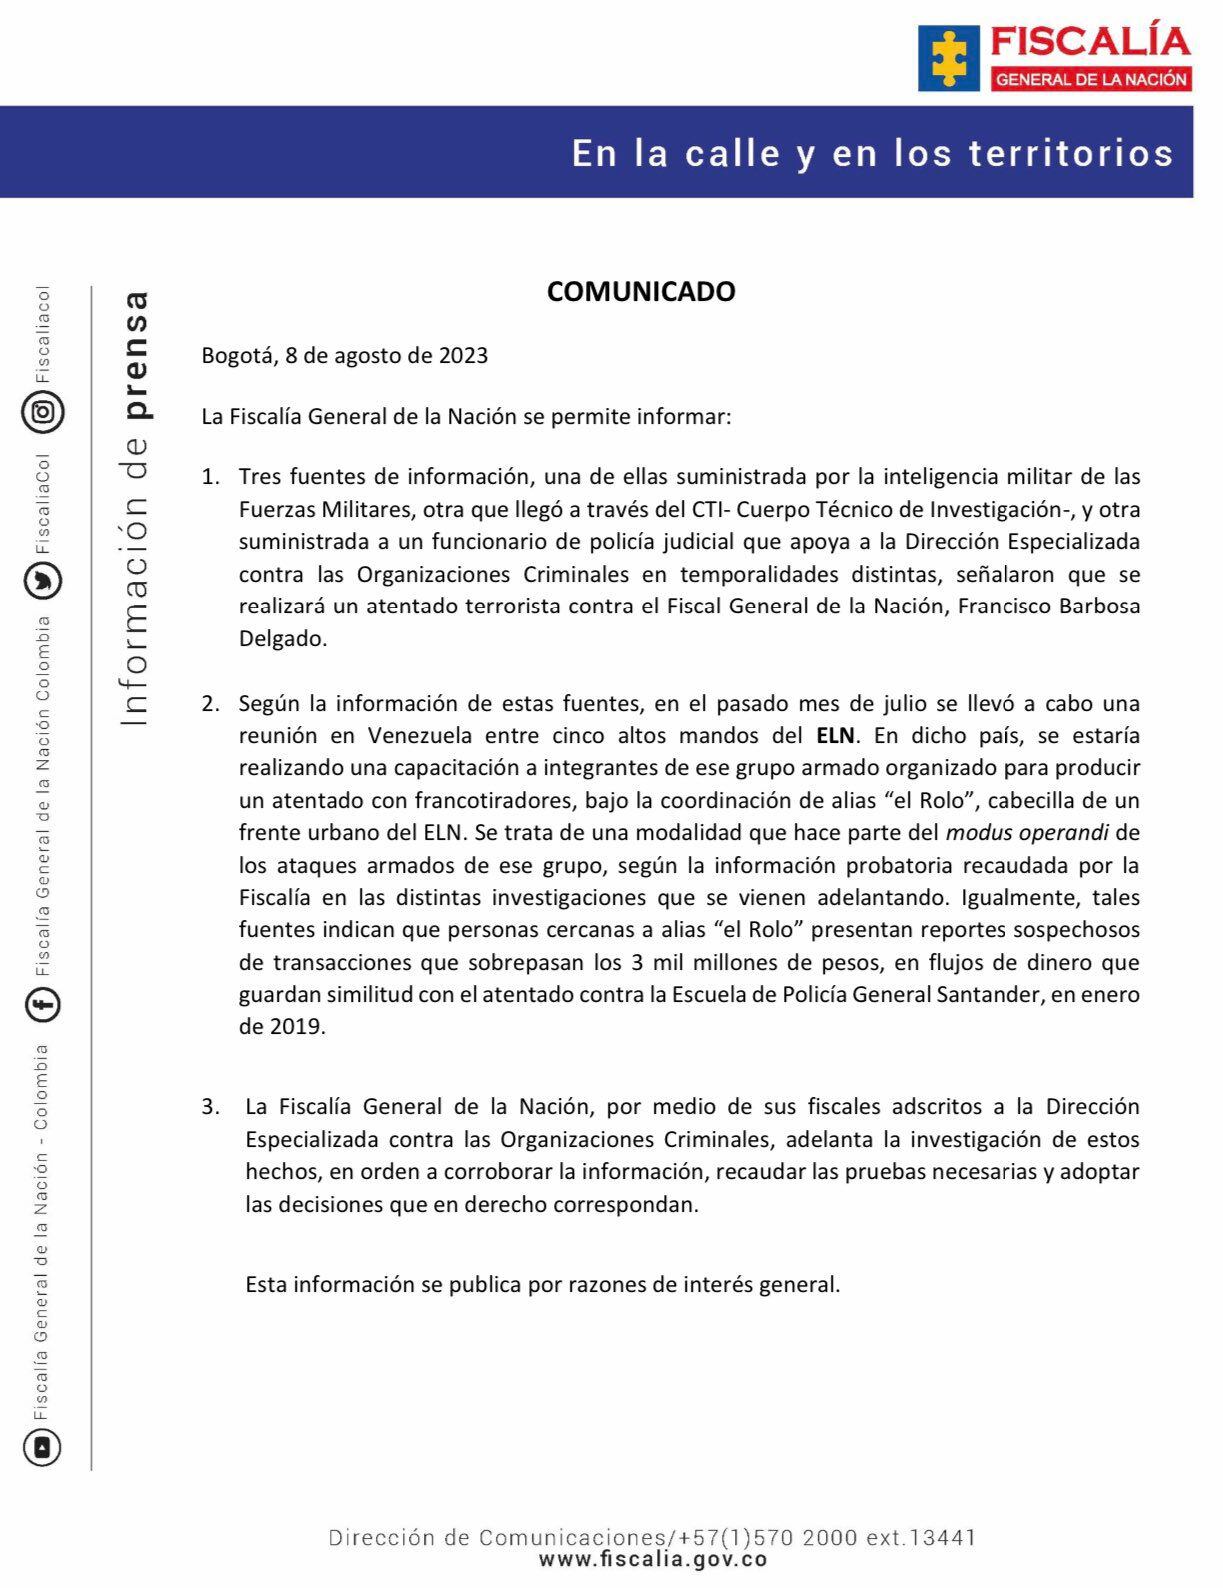 Comunicado de la Fiscalía General sobre atentado contra el fiscal Francisco Barbosa